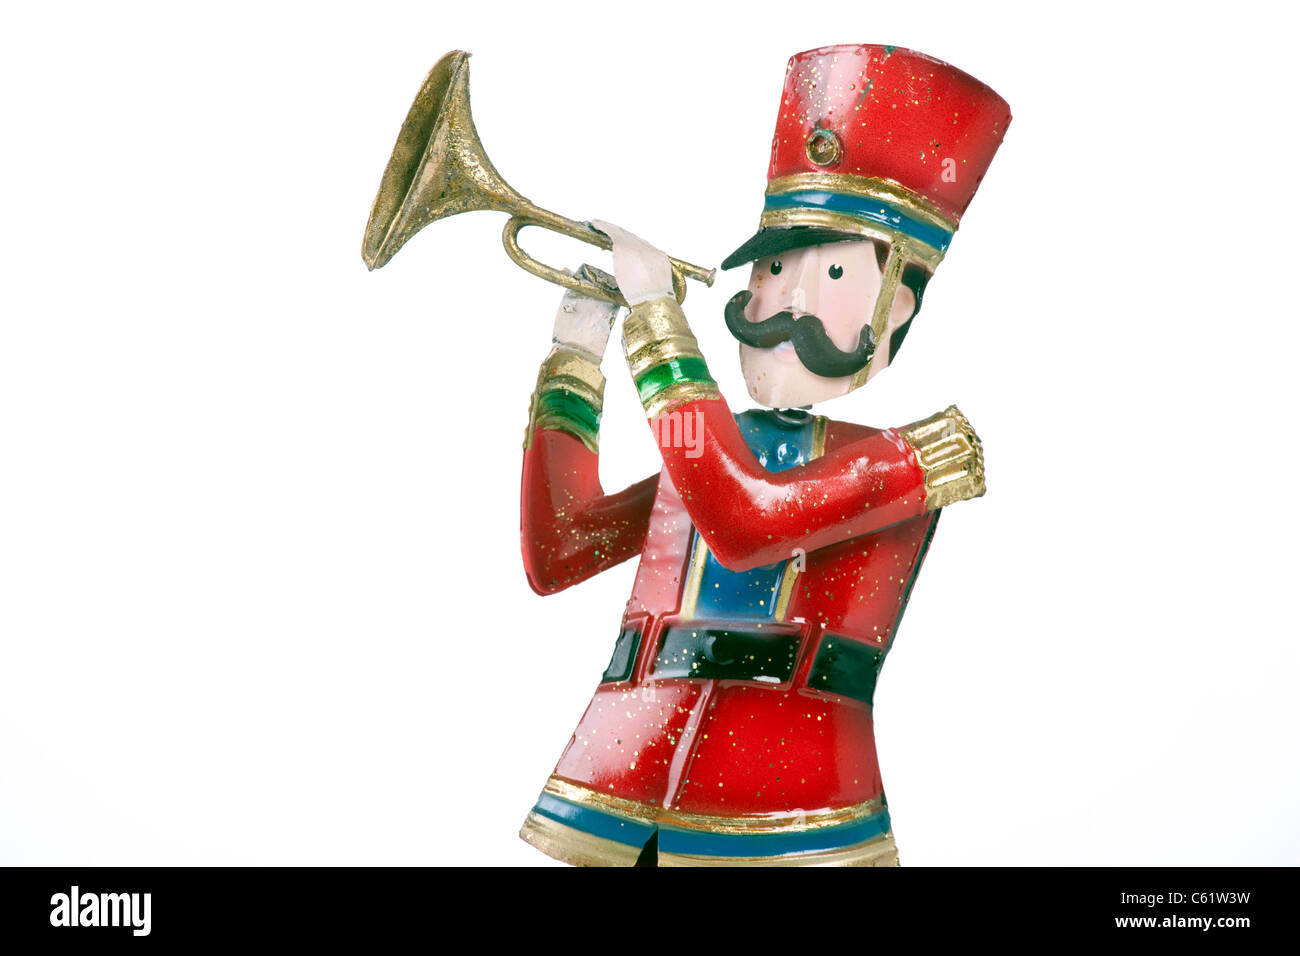 Ein Spielzeug Soldat Trompeter isoliert auf einem weißen Hintergrund im horizontalen Format. Stockfoto